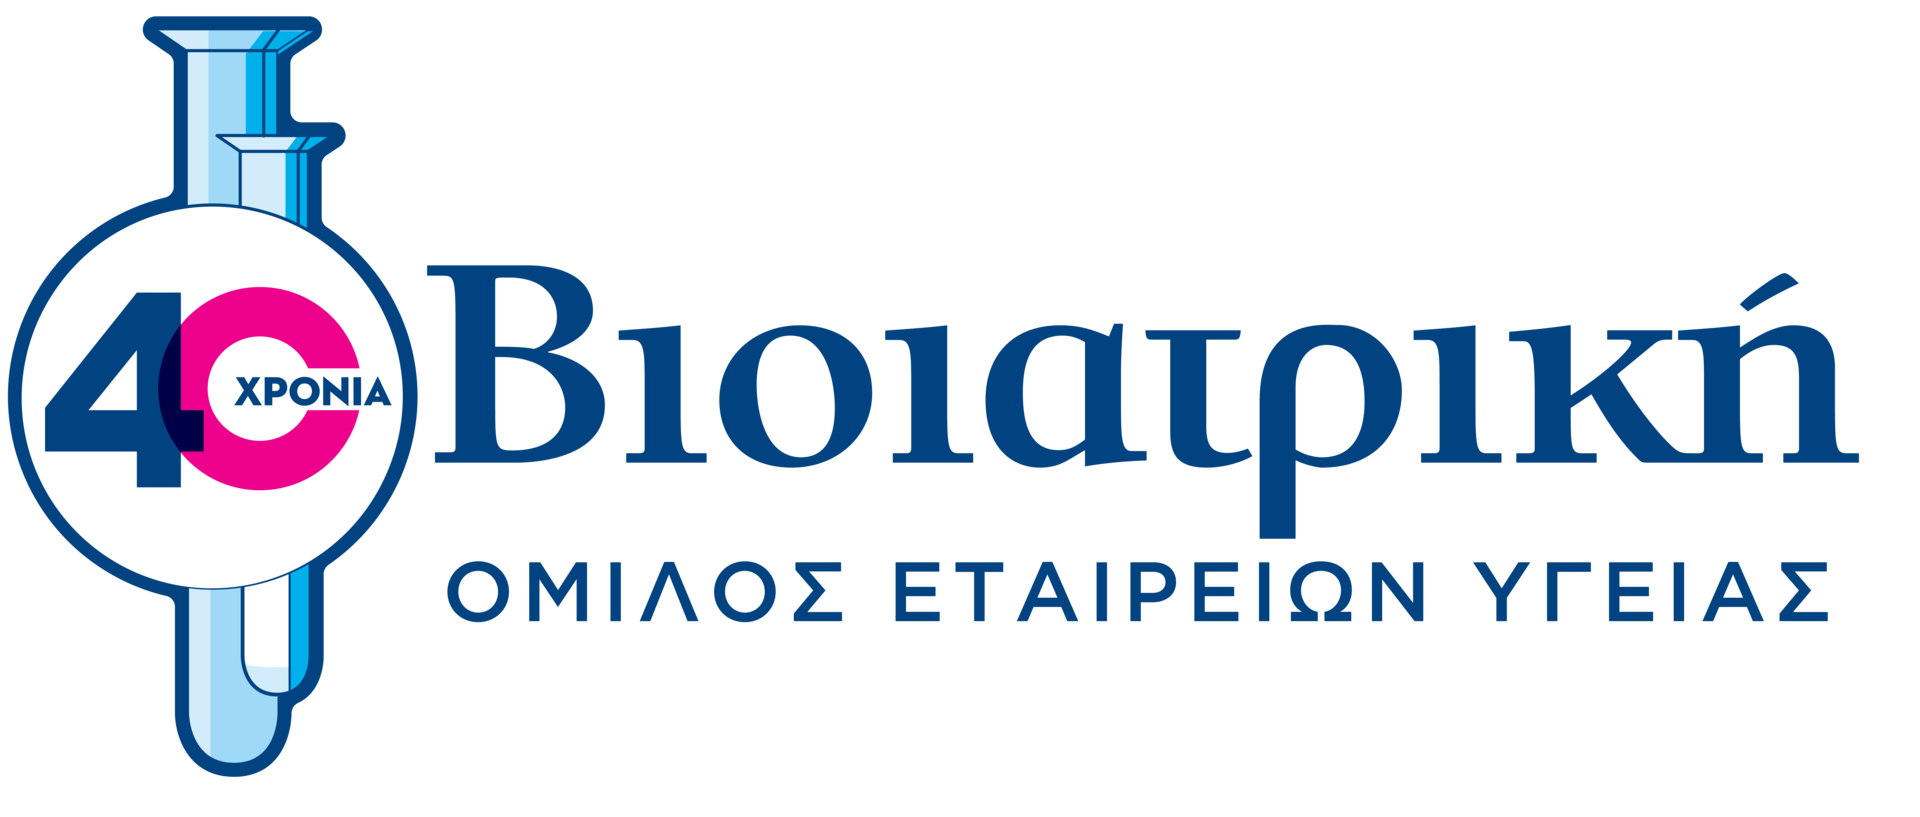 bioiatriki-logo